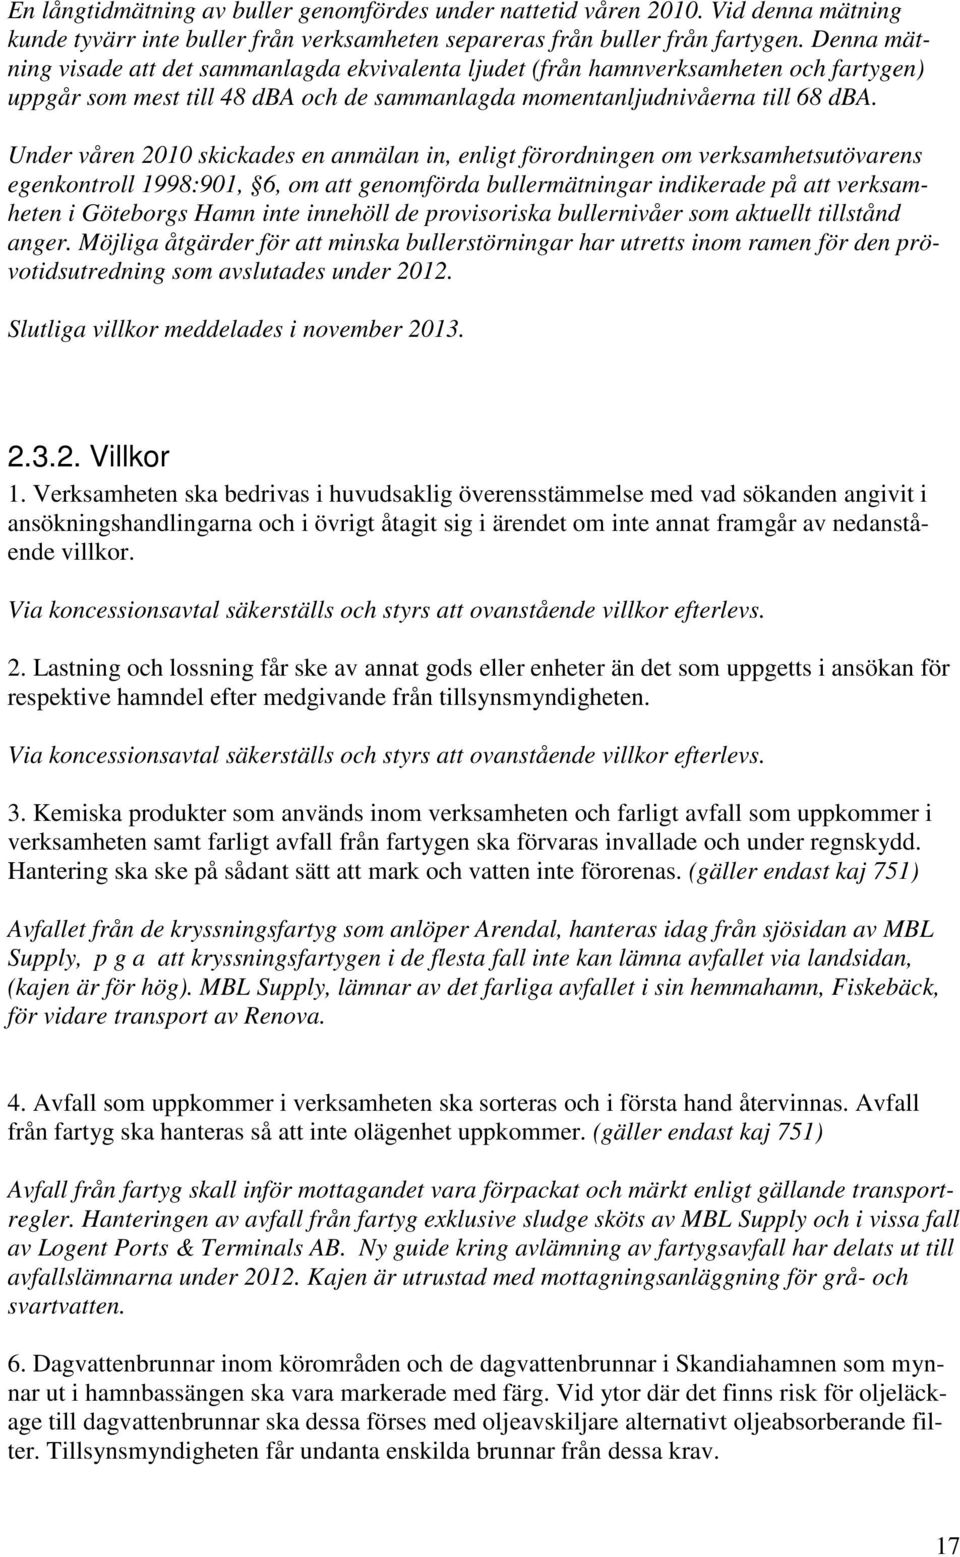 Under våren 2010 skickades en anmälan in, enligt förordningen om verksamhetsutövarens egenkontroll 1998:901, 6, om att genomförda bullermätningar indikerade på att verksamheten i Göteborgs Hamn inte